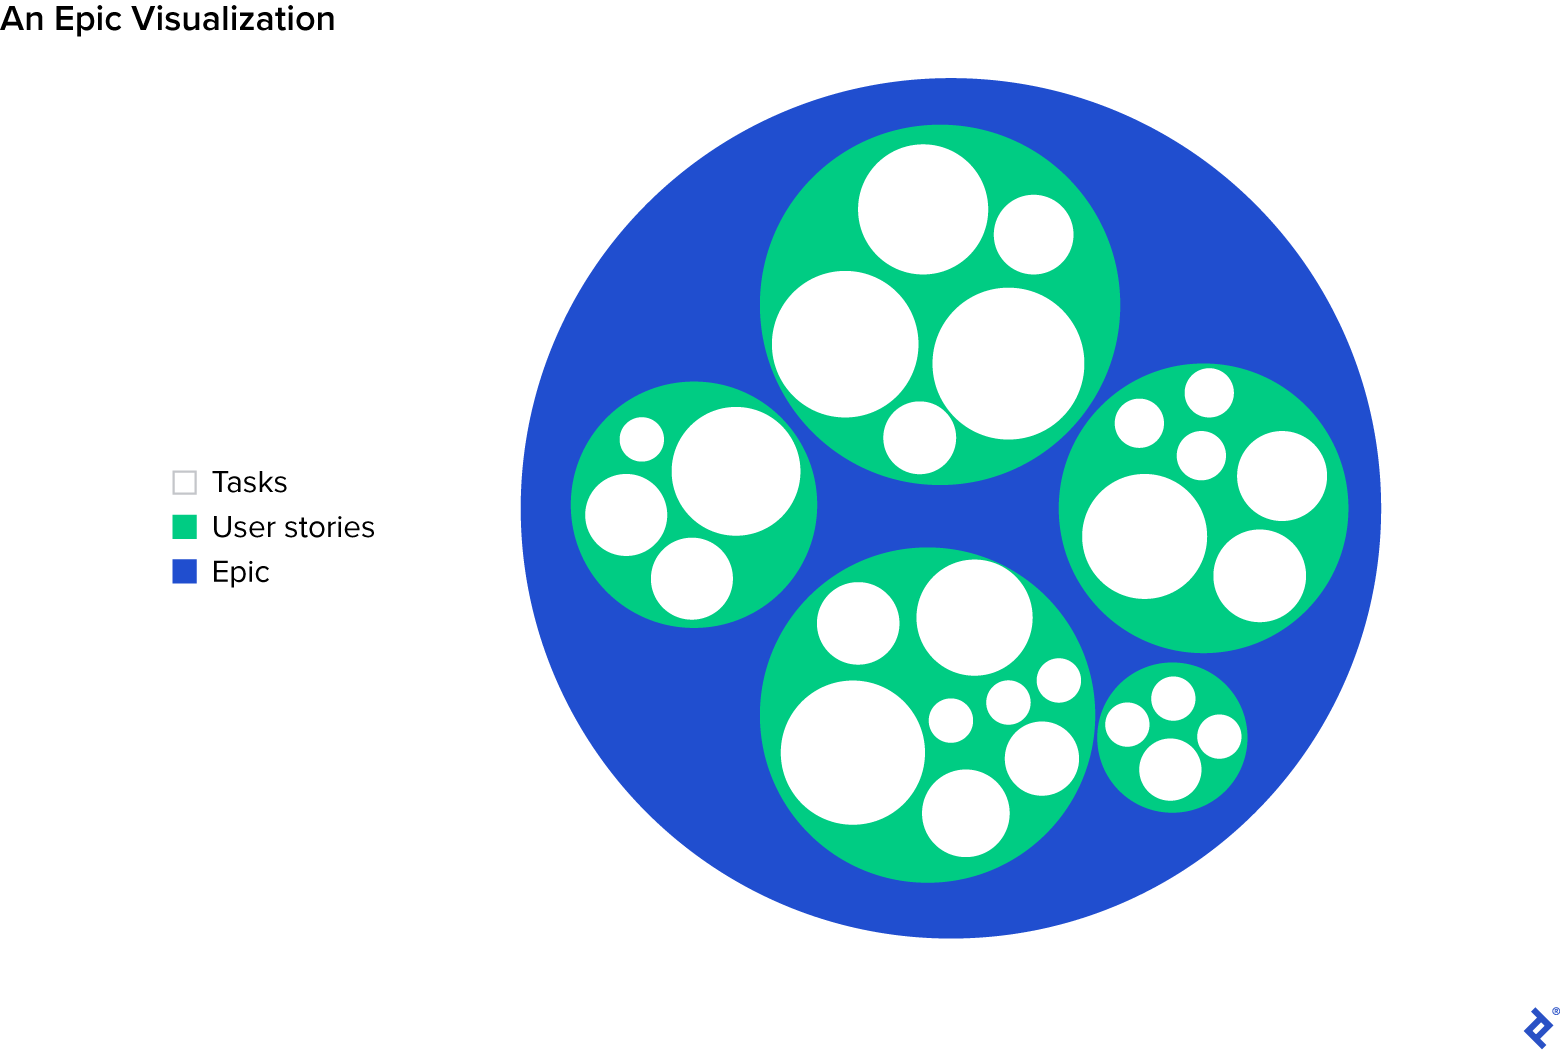 Un grand cercle rempli de petits cercles, chacun rempli de cercles plus petits, représentant la relation entre les tâches, les user stories et les epics.